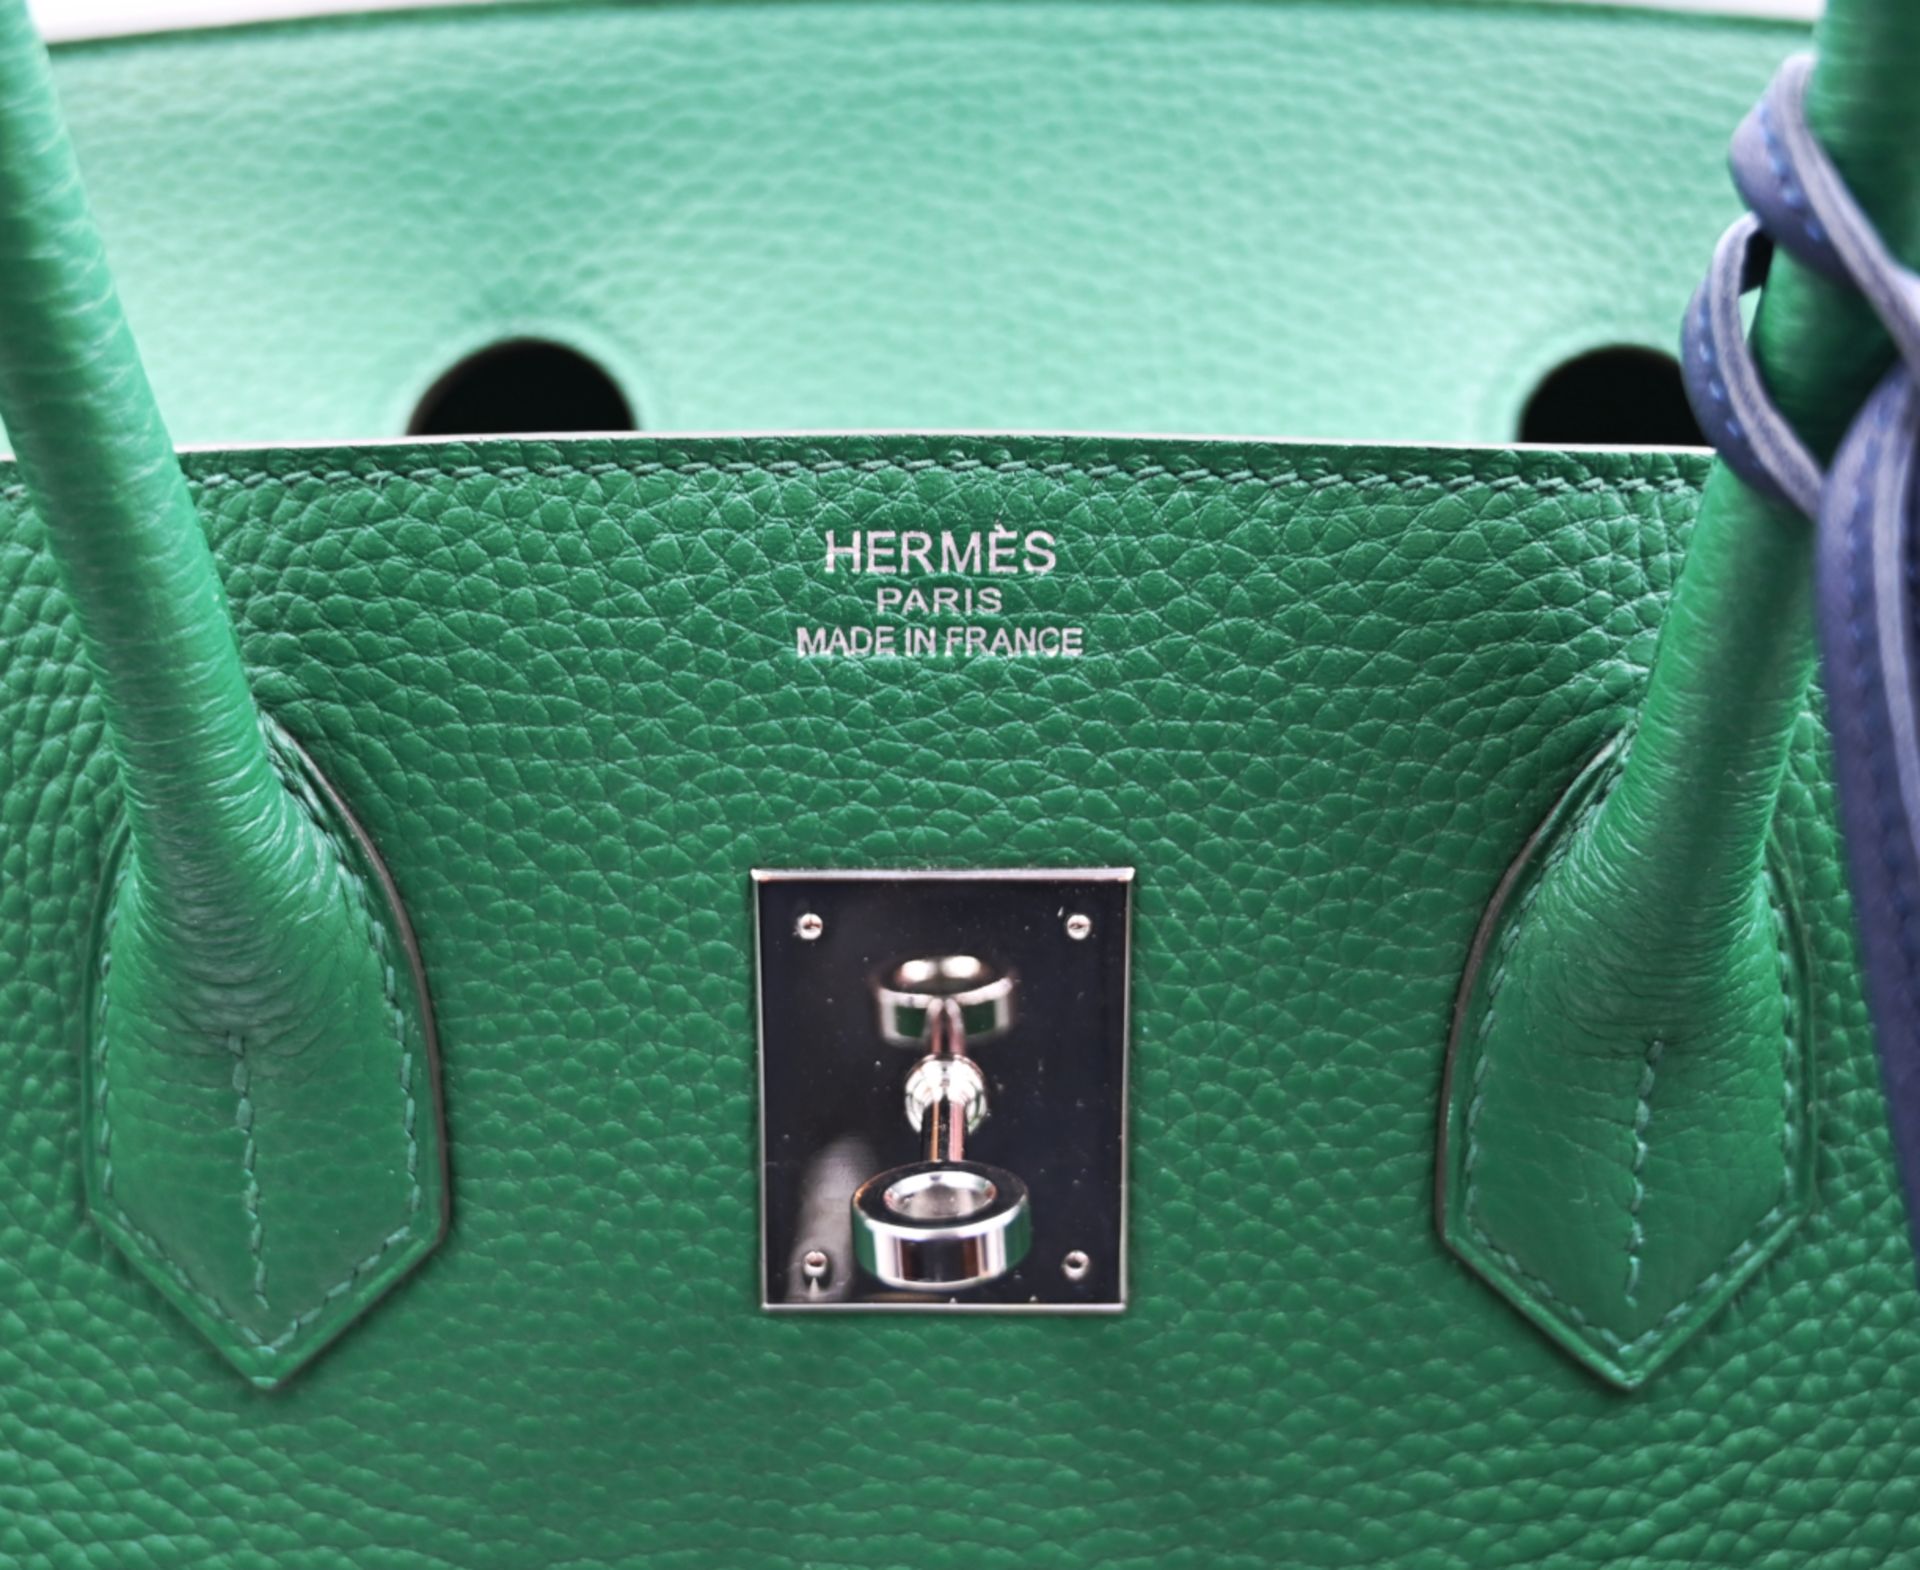 1 Damenhandtasche HERMÈS Modell: Birkin 35 grün - Bild 7 aus 13